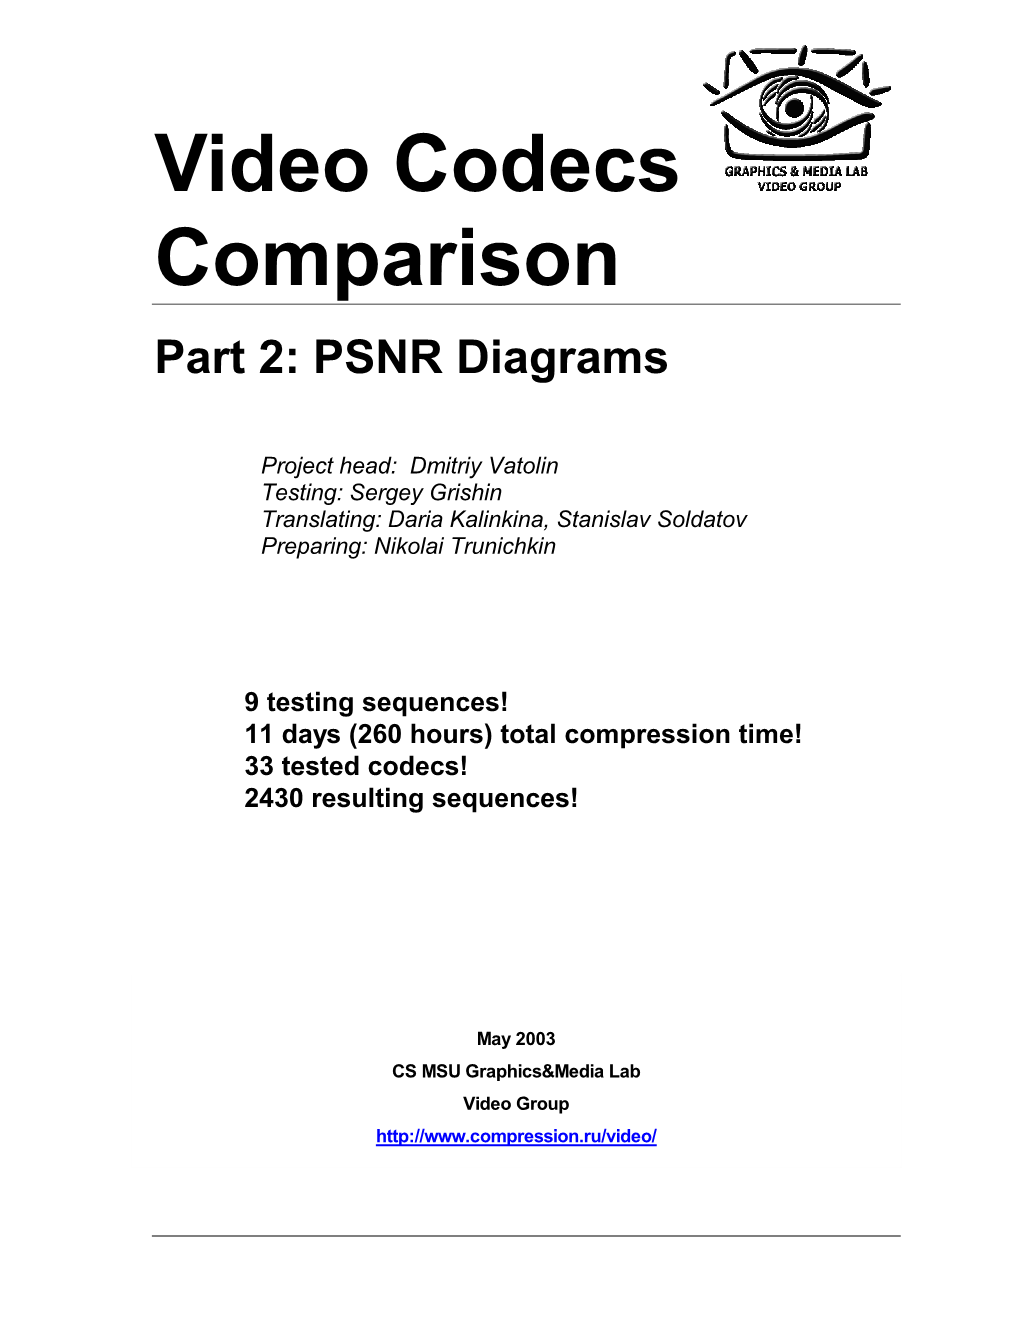 Video Codecs Comparison Part 2: PSNR Diagrams